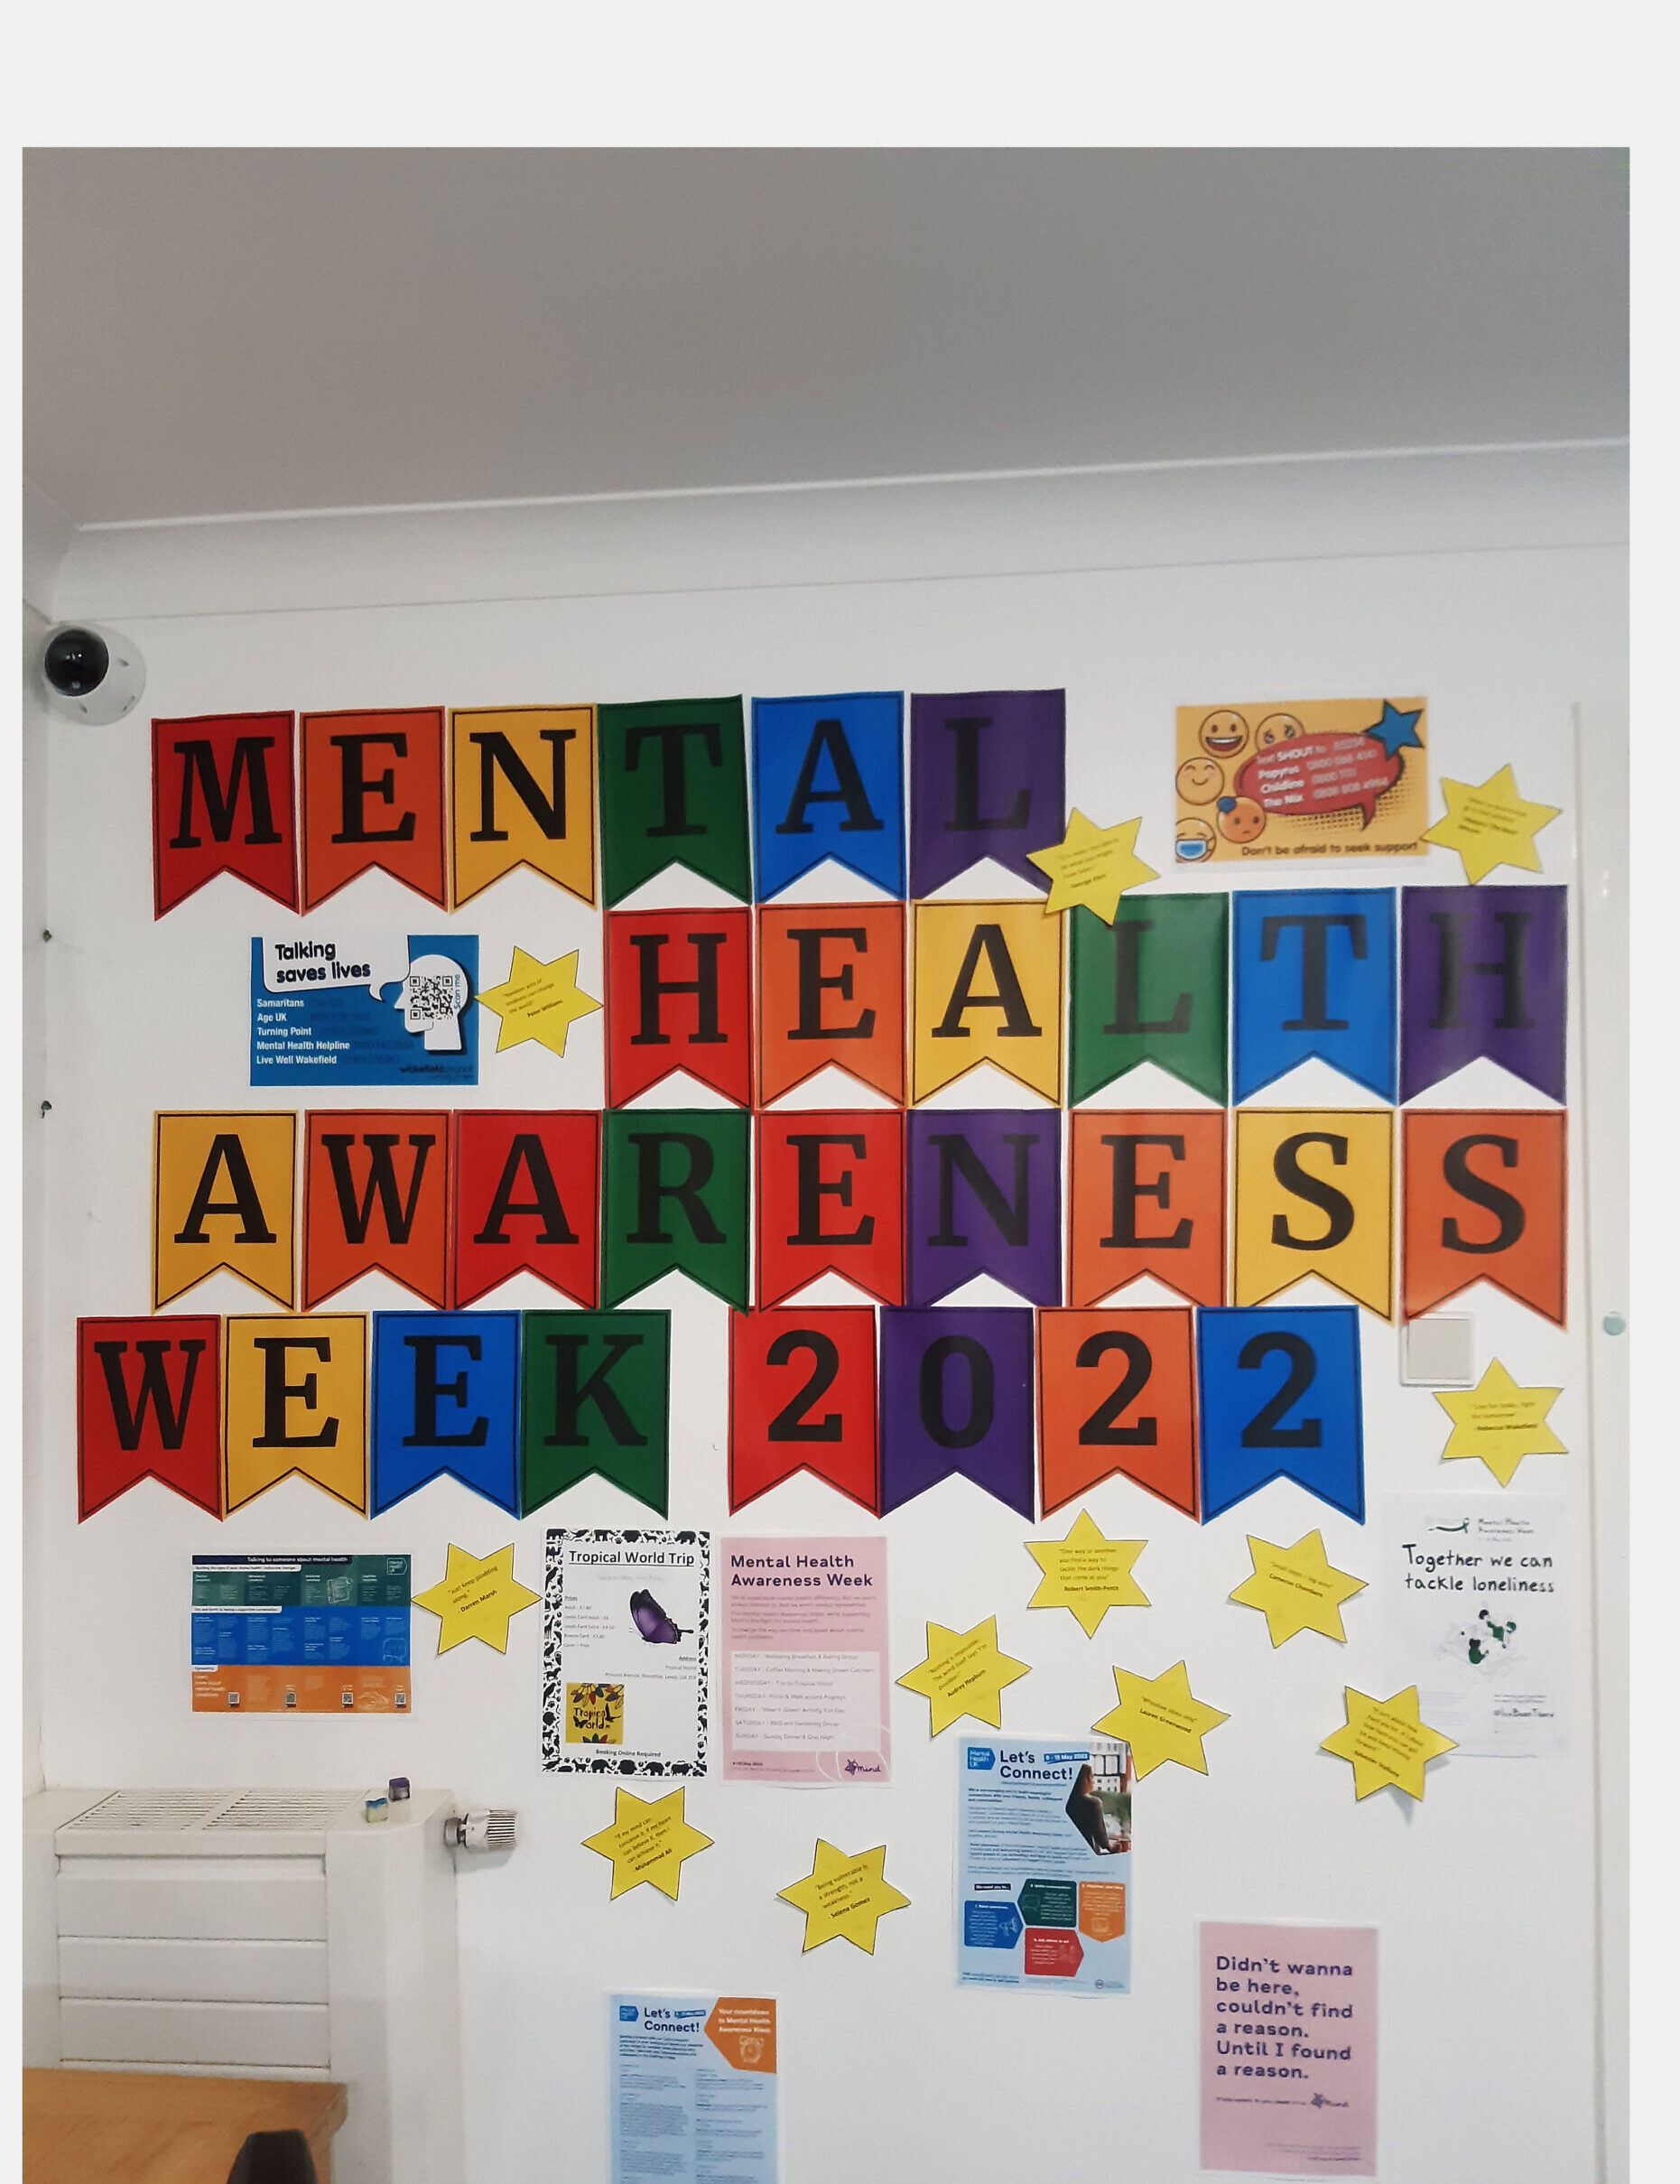 coloured bunting spelling "Mental Health Awareness Week 2022"